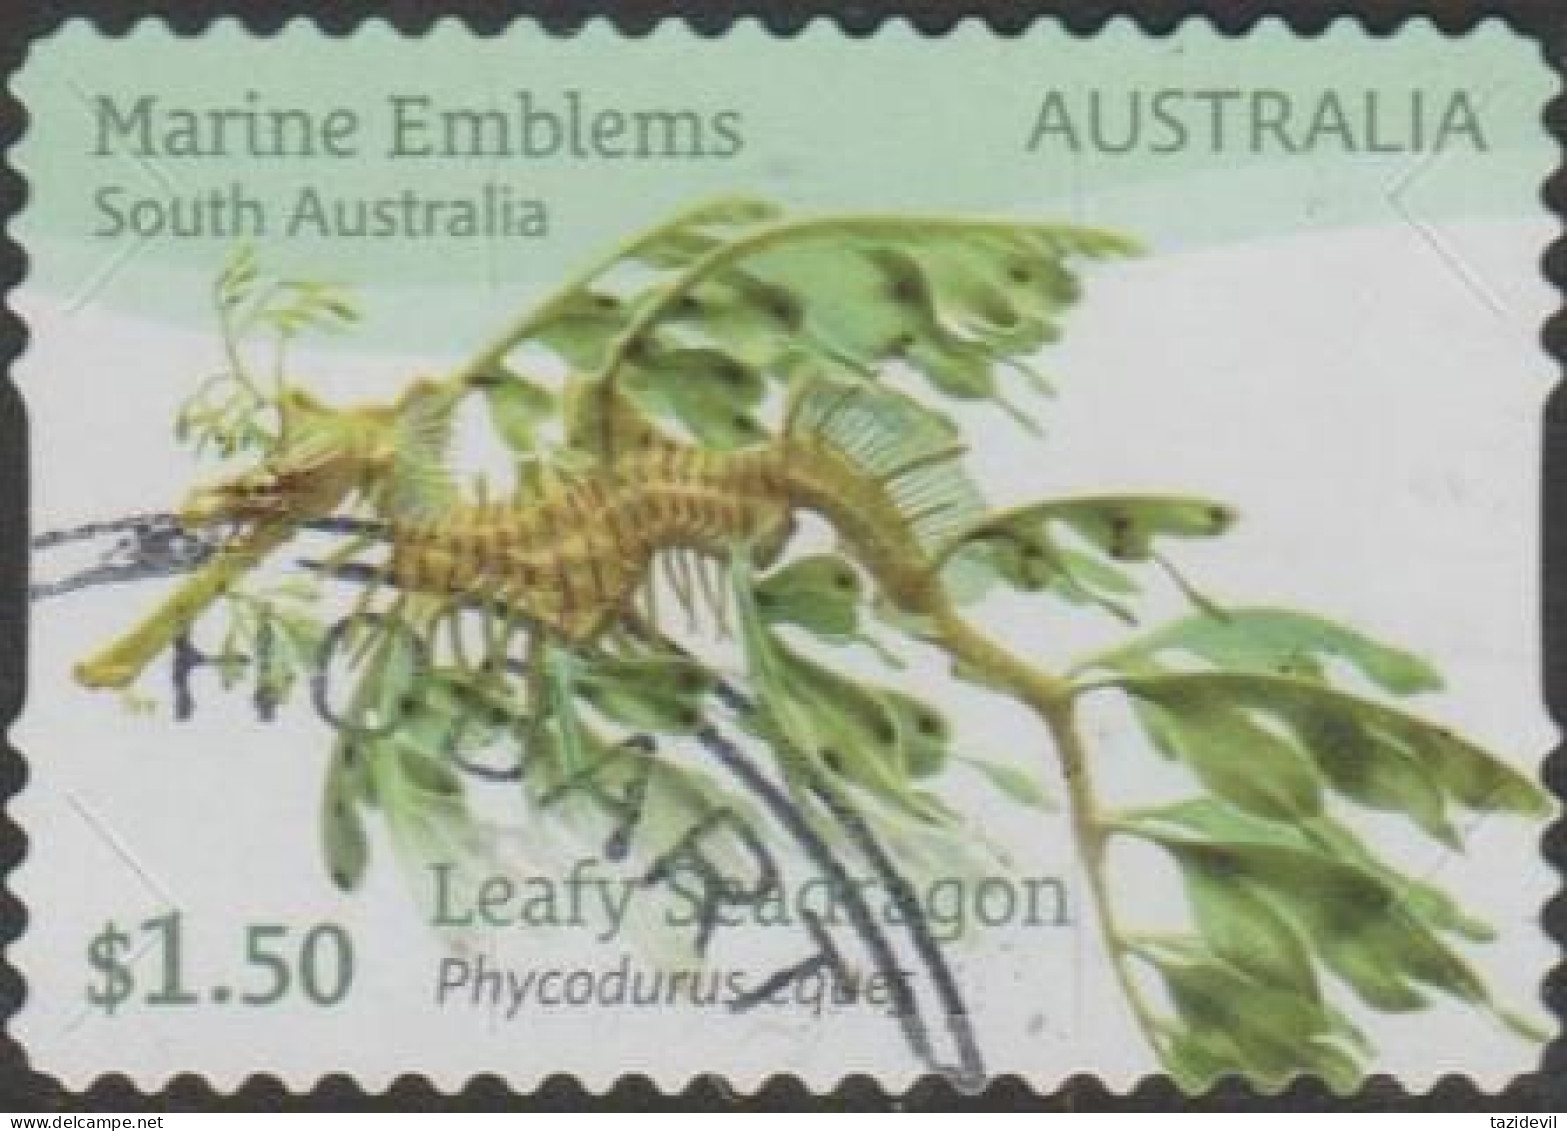 AUSTRALIA - DIE-CUT-USED 2024 $1.50 Marine Emblems - Leafy Seadragon - South Australia - Used Stamps